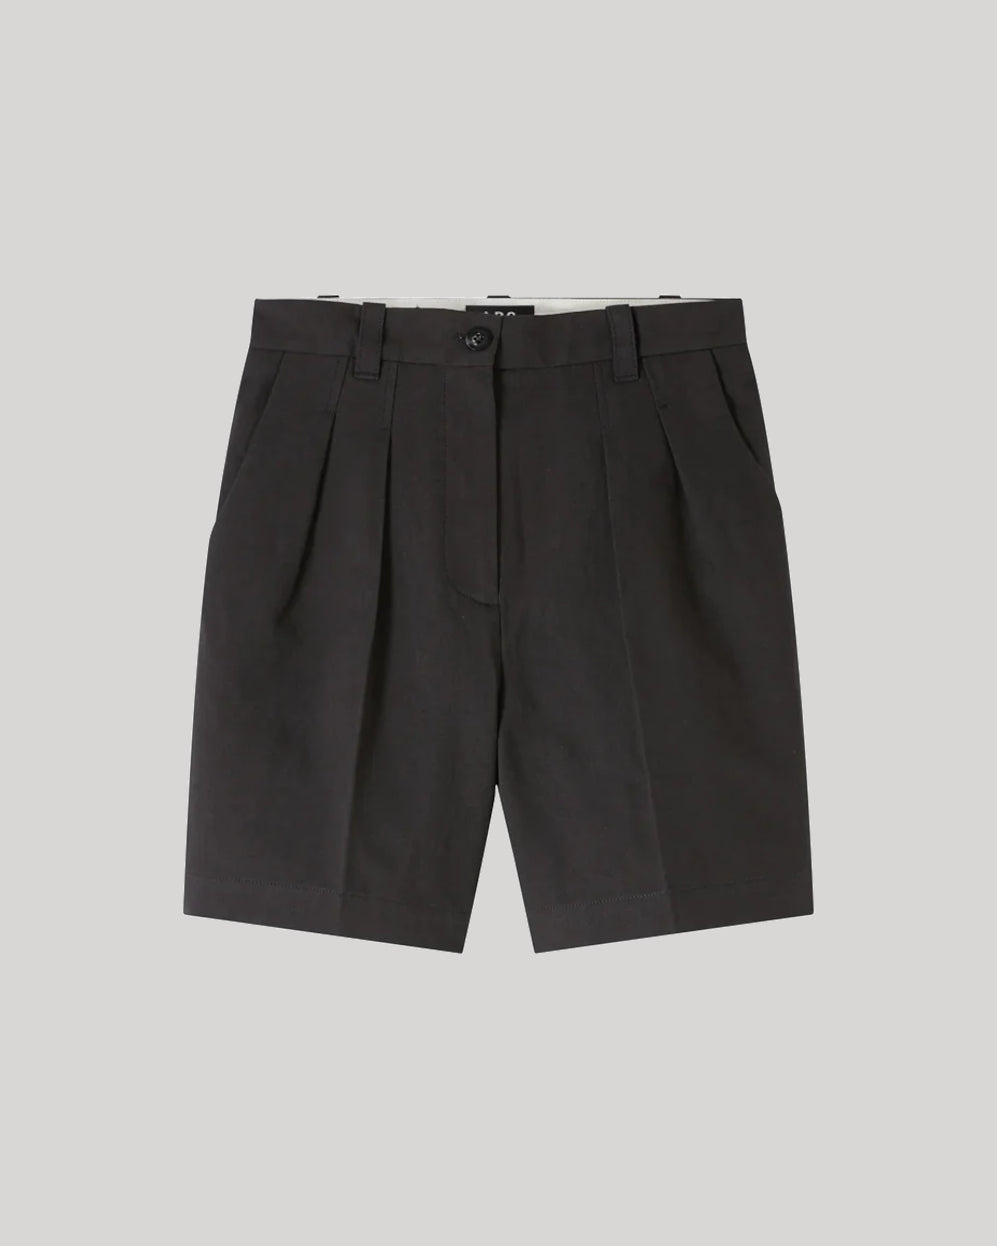 A.P.C. Charcoal Grey Nola Shorts